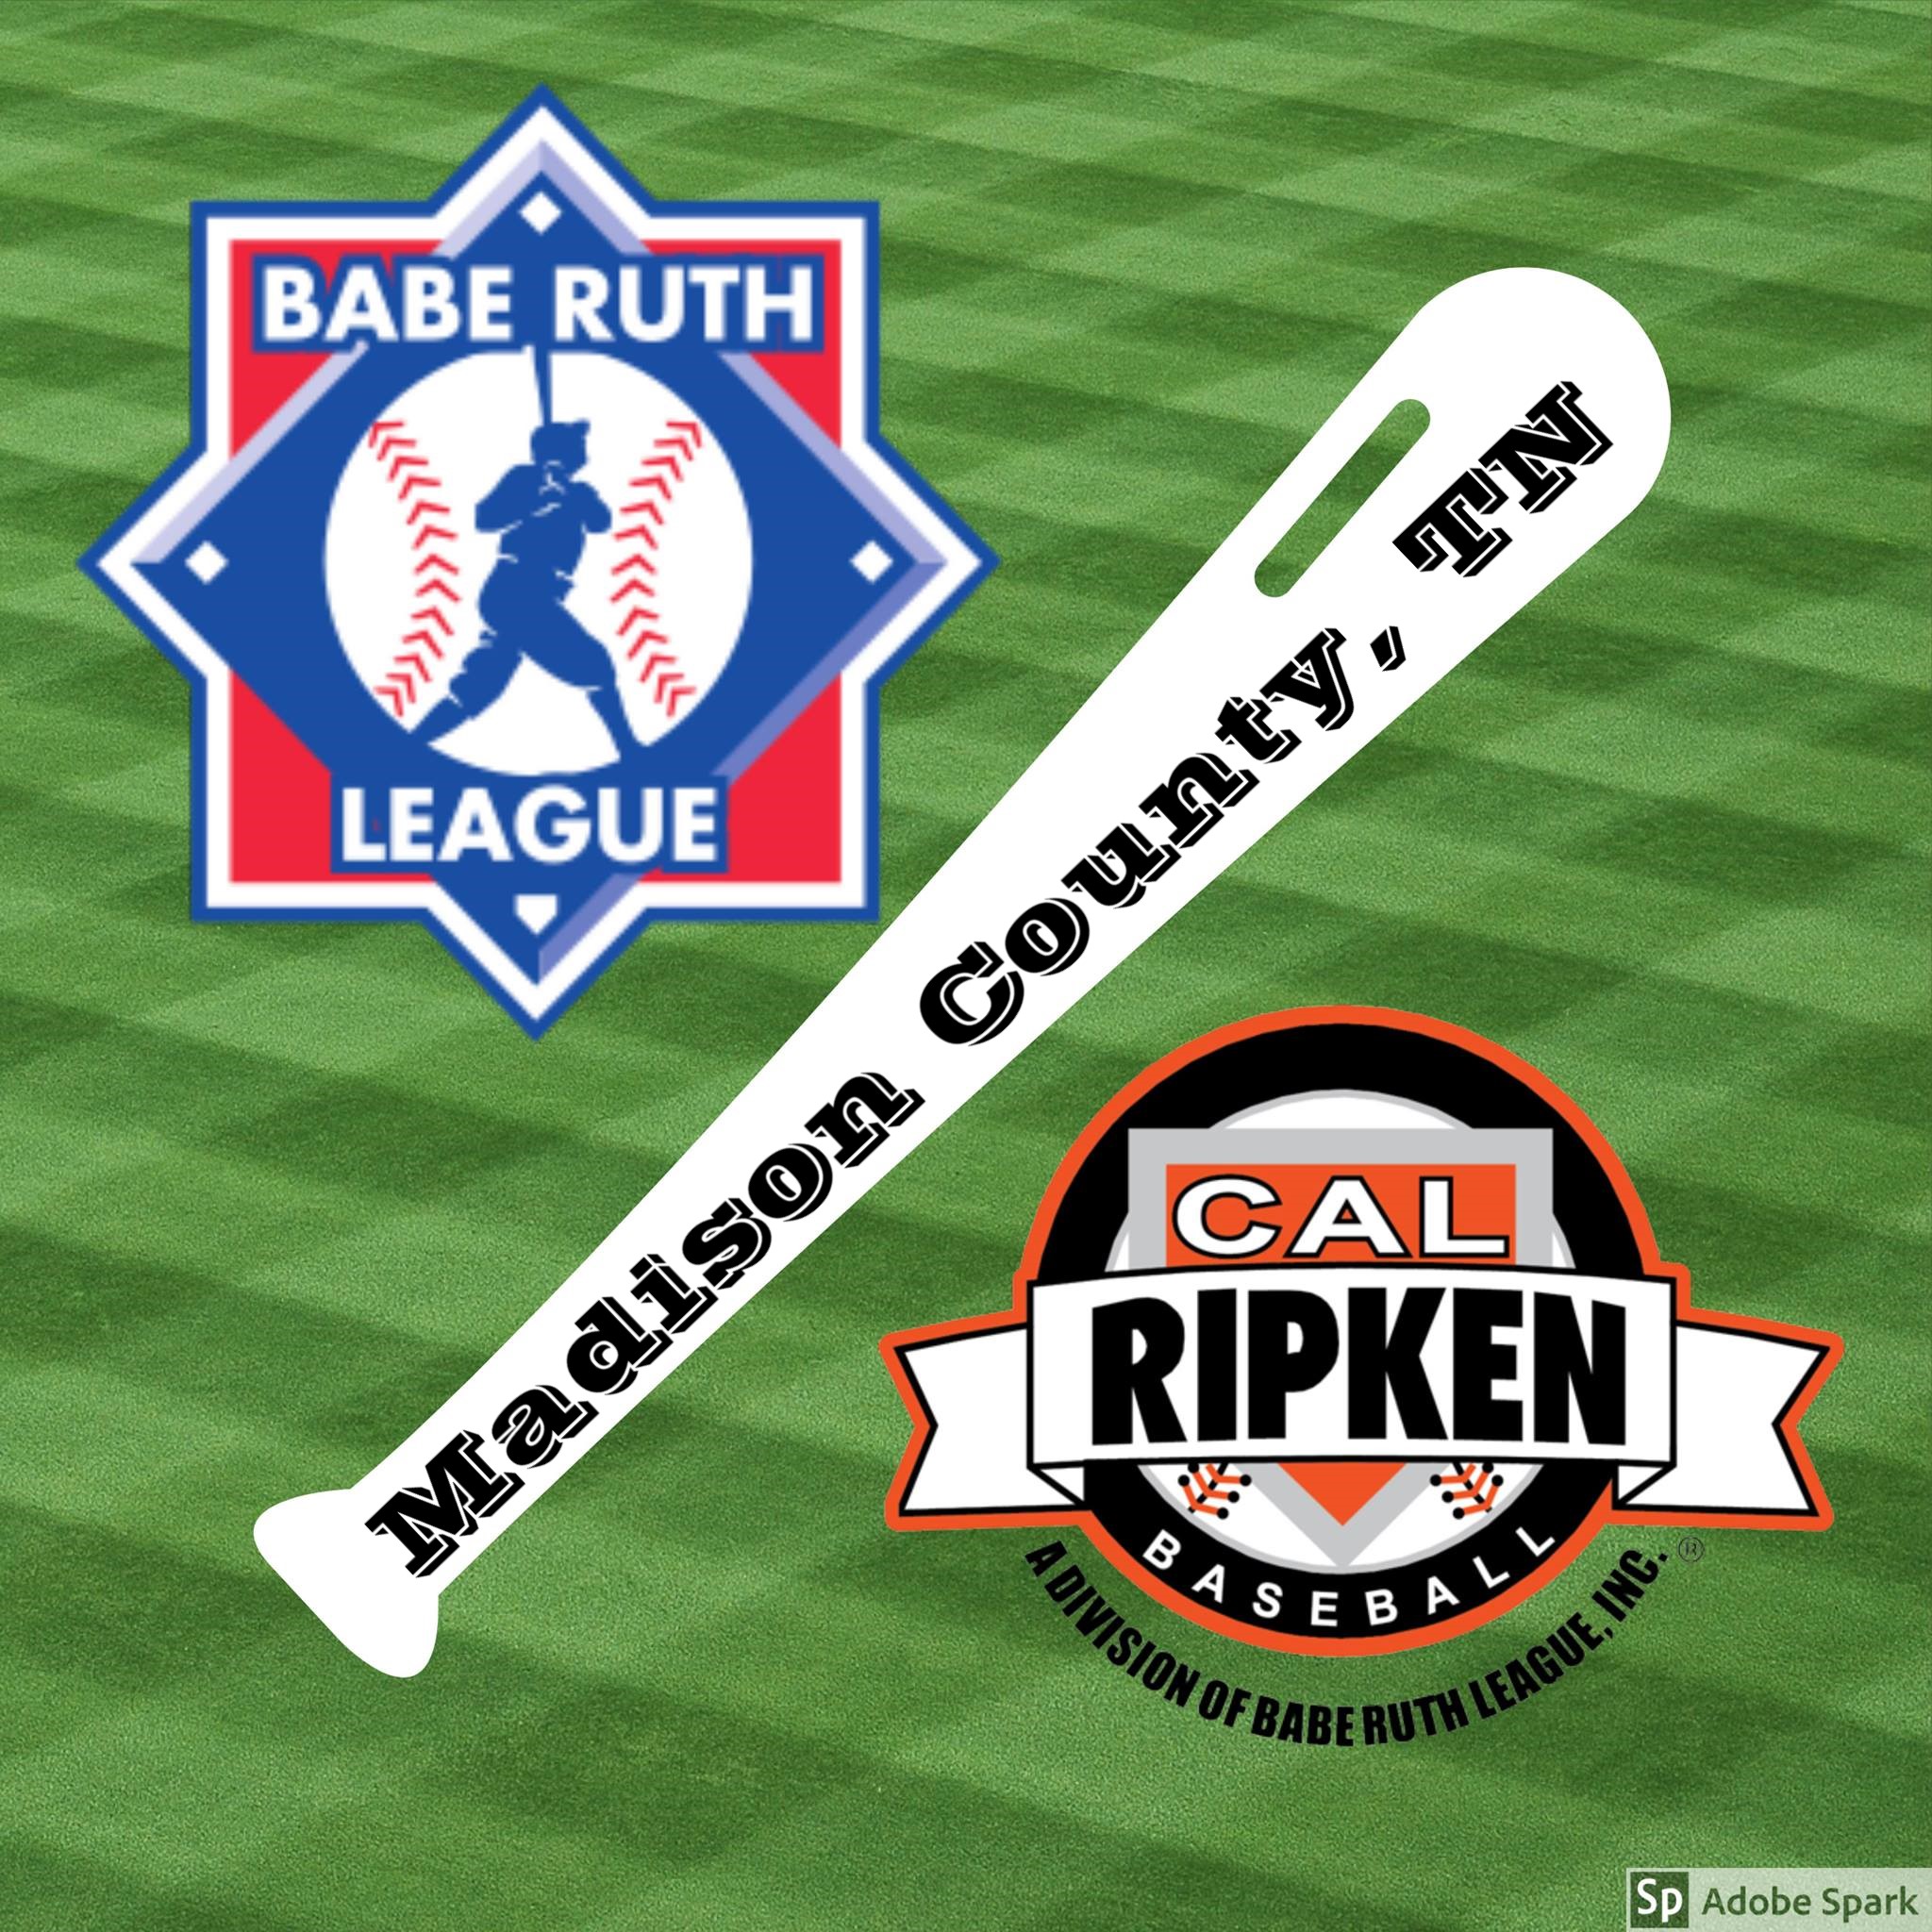 Cal Ripken Baseball - A Division of Babe Ruth League, Inc.